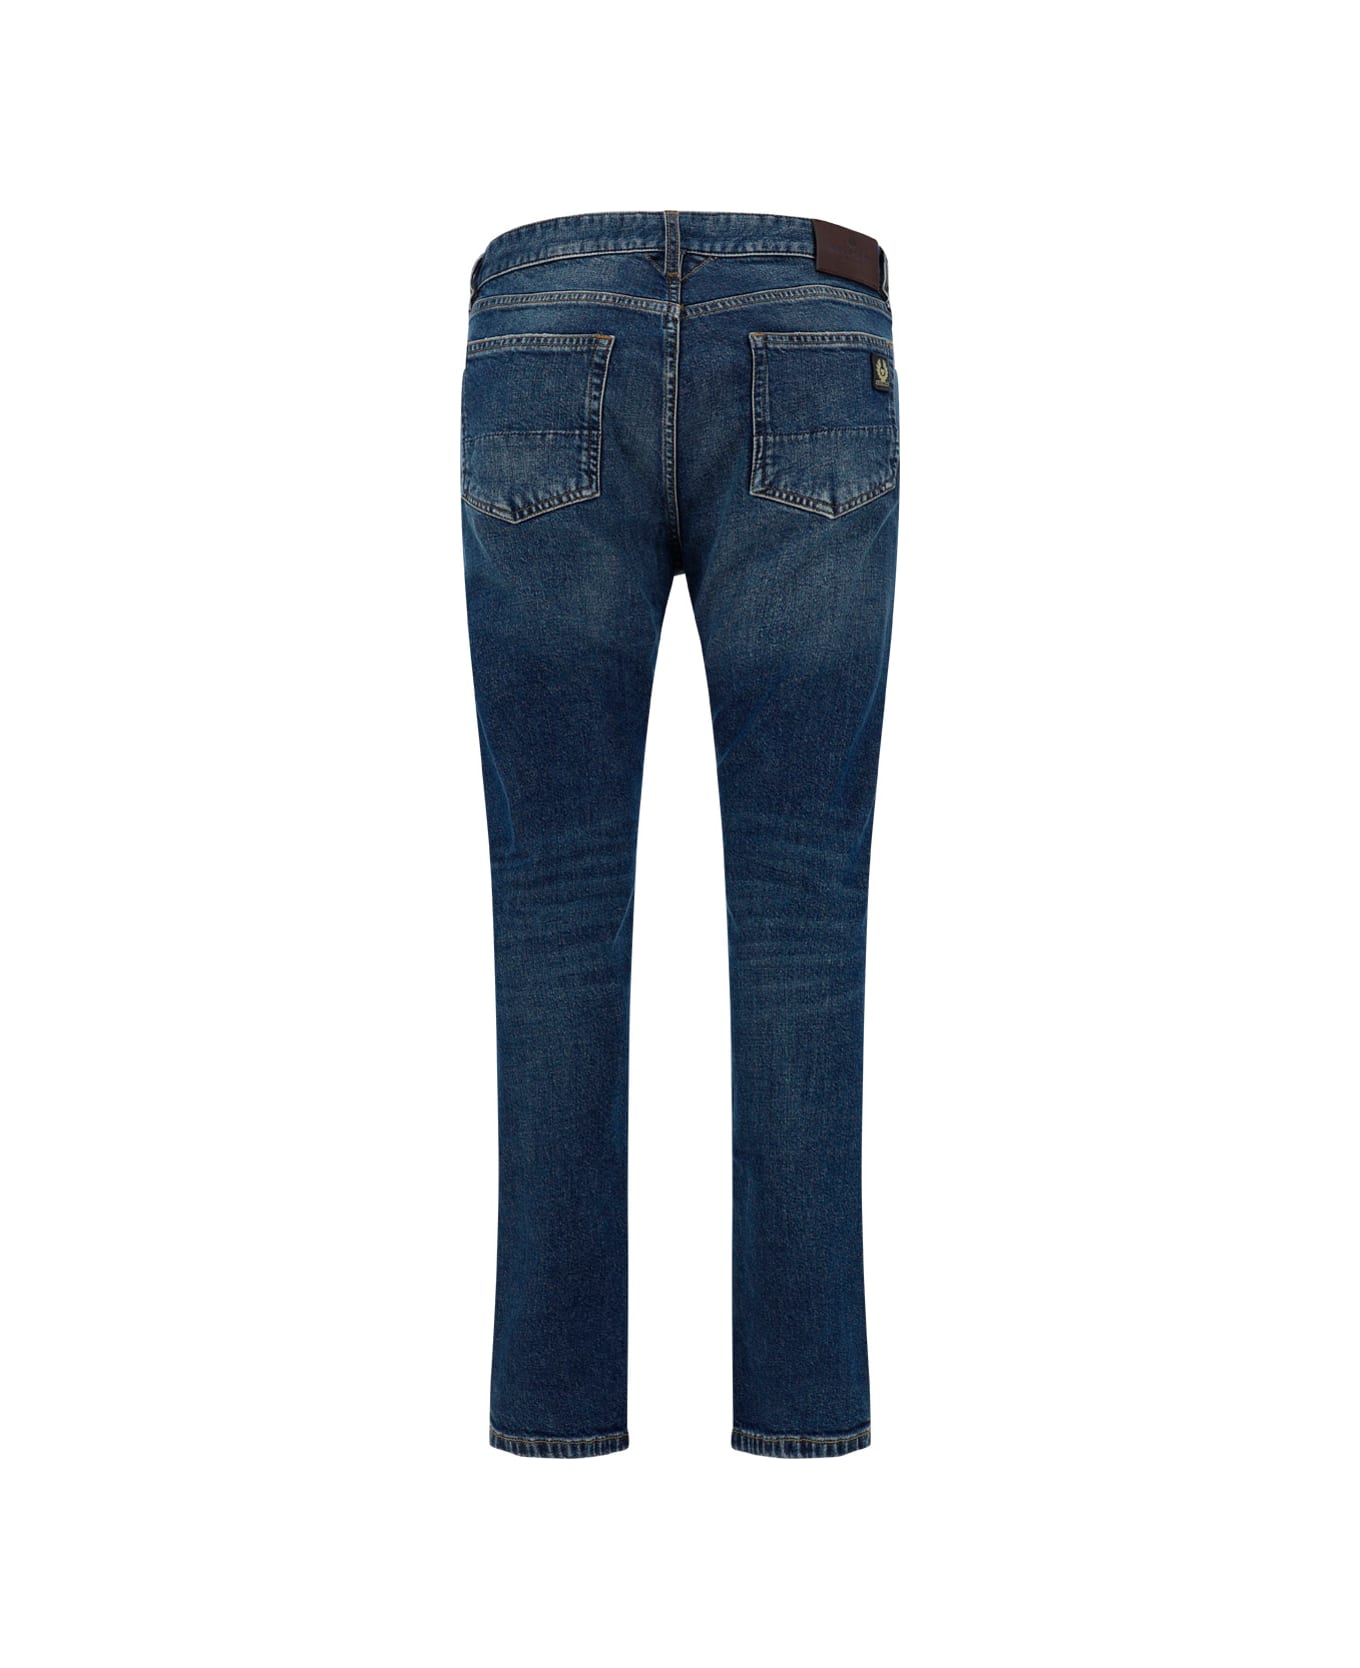 Belstaff Longton Jeans - Washed Indigo